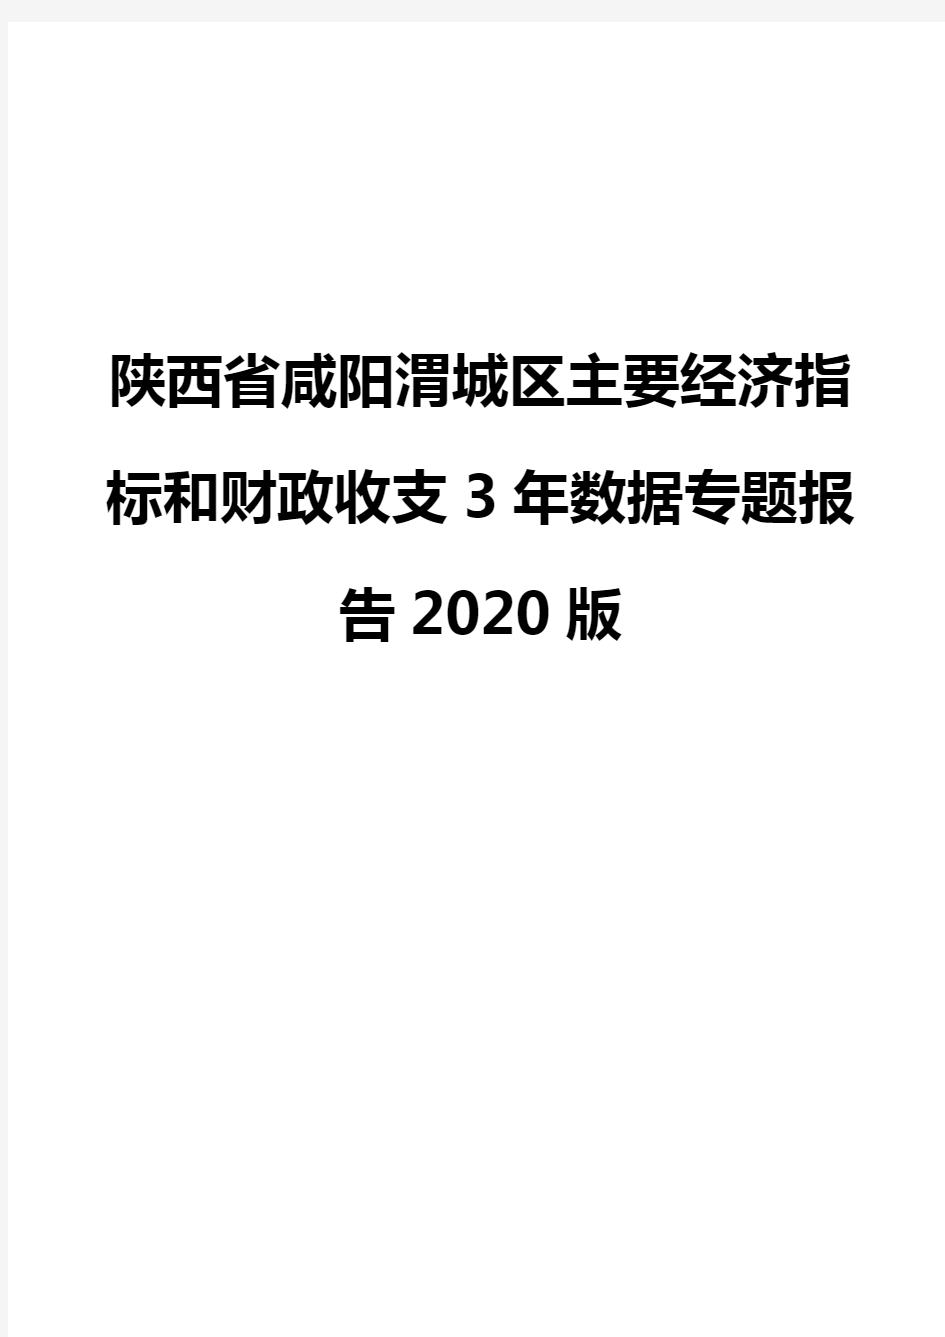 陕西省咸阳渭城区主要经济指标和财政收支3年数据专题报告2020版